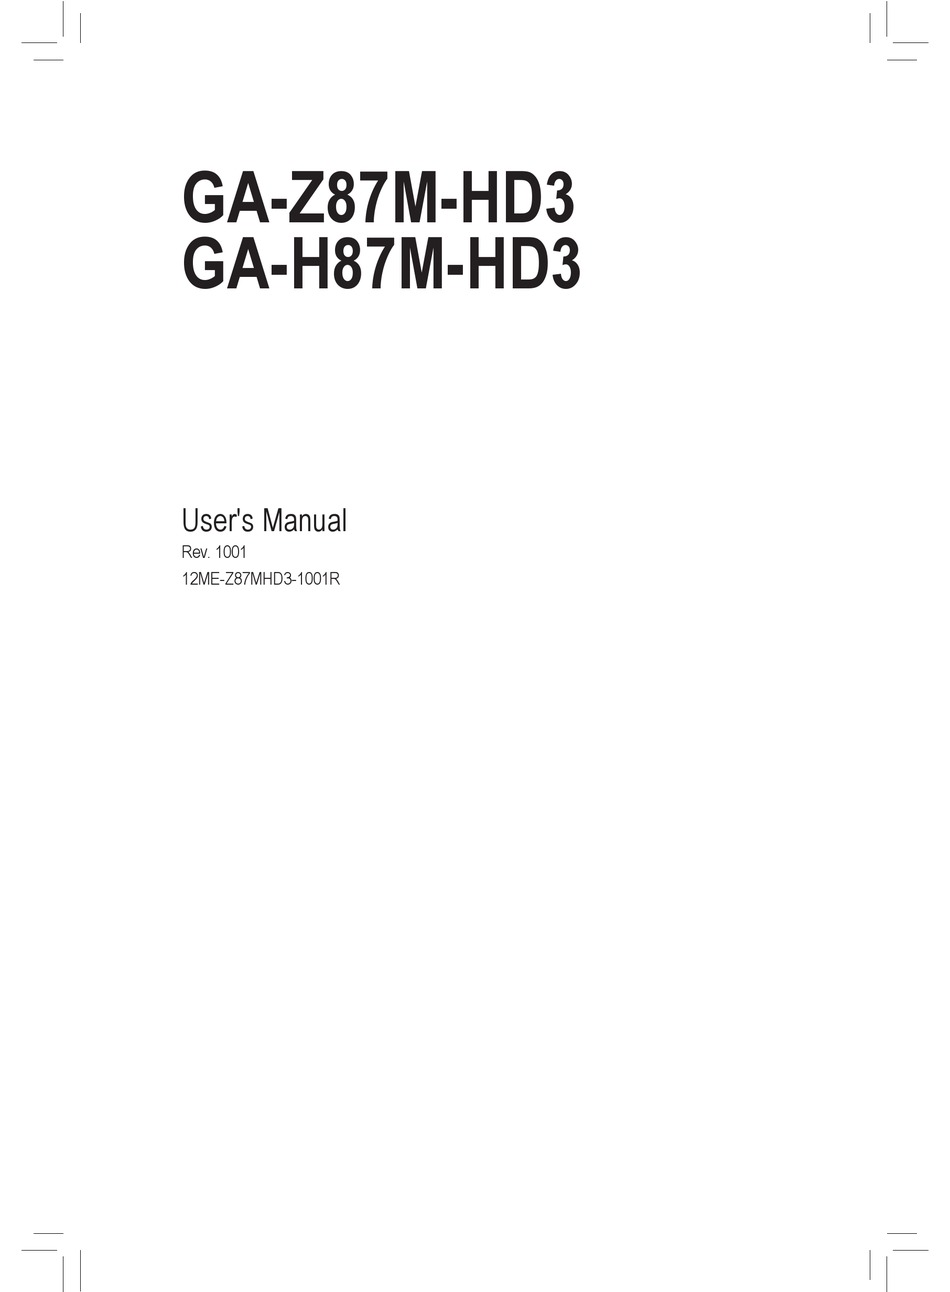 Gigabyte GA-H87M-HD3 scheda madre